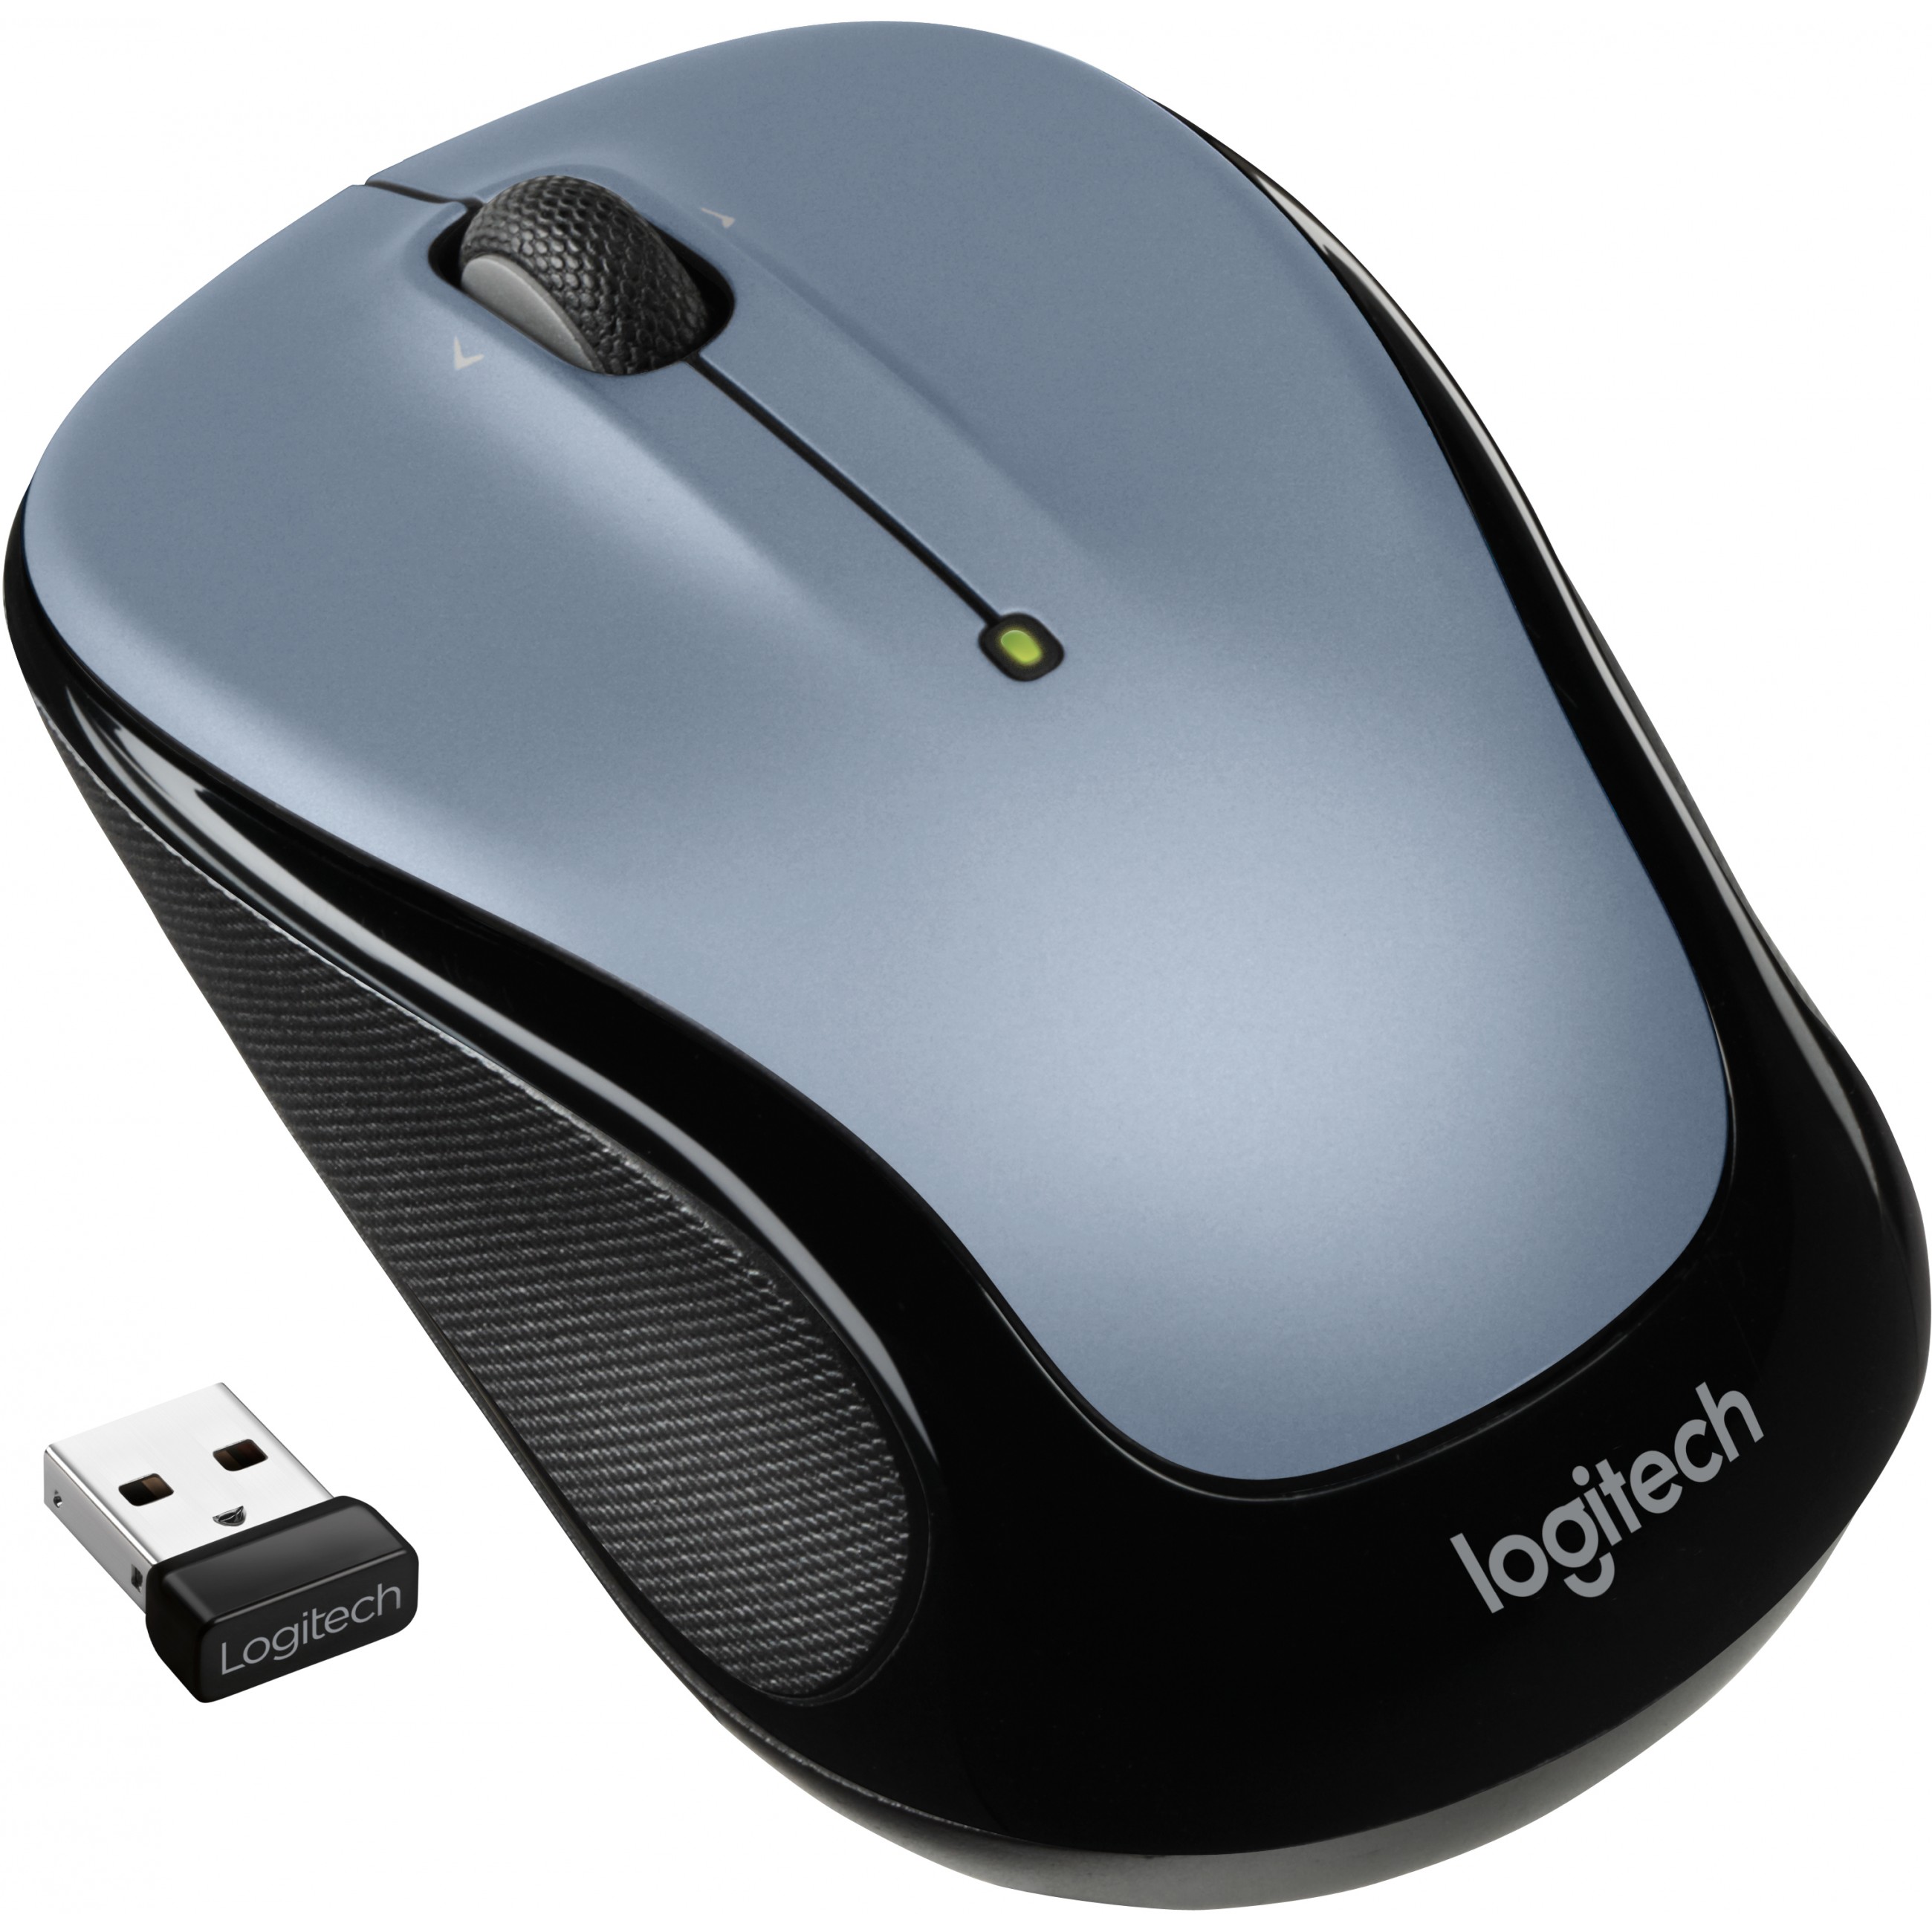 Logitech M325s mouse